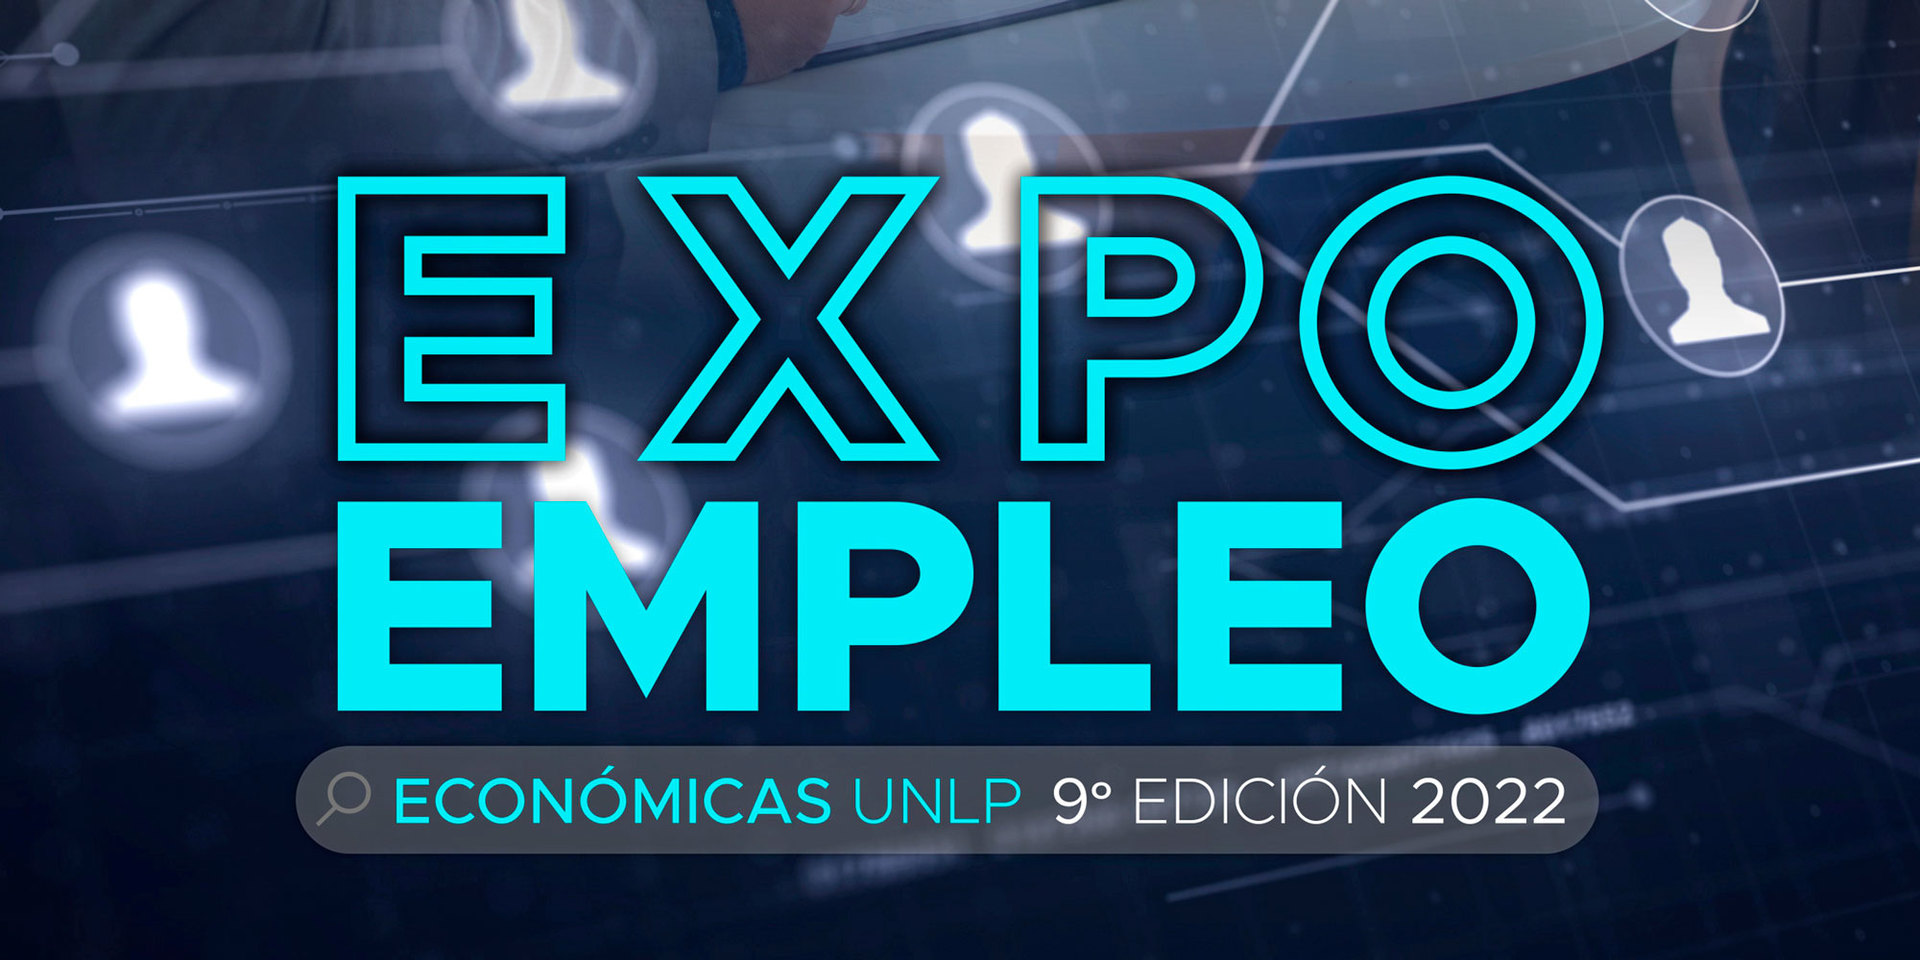 Expo Empleo 2022